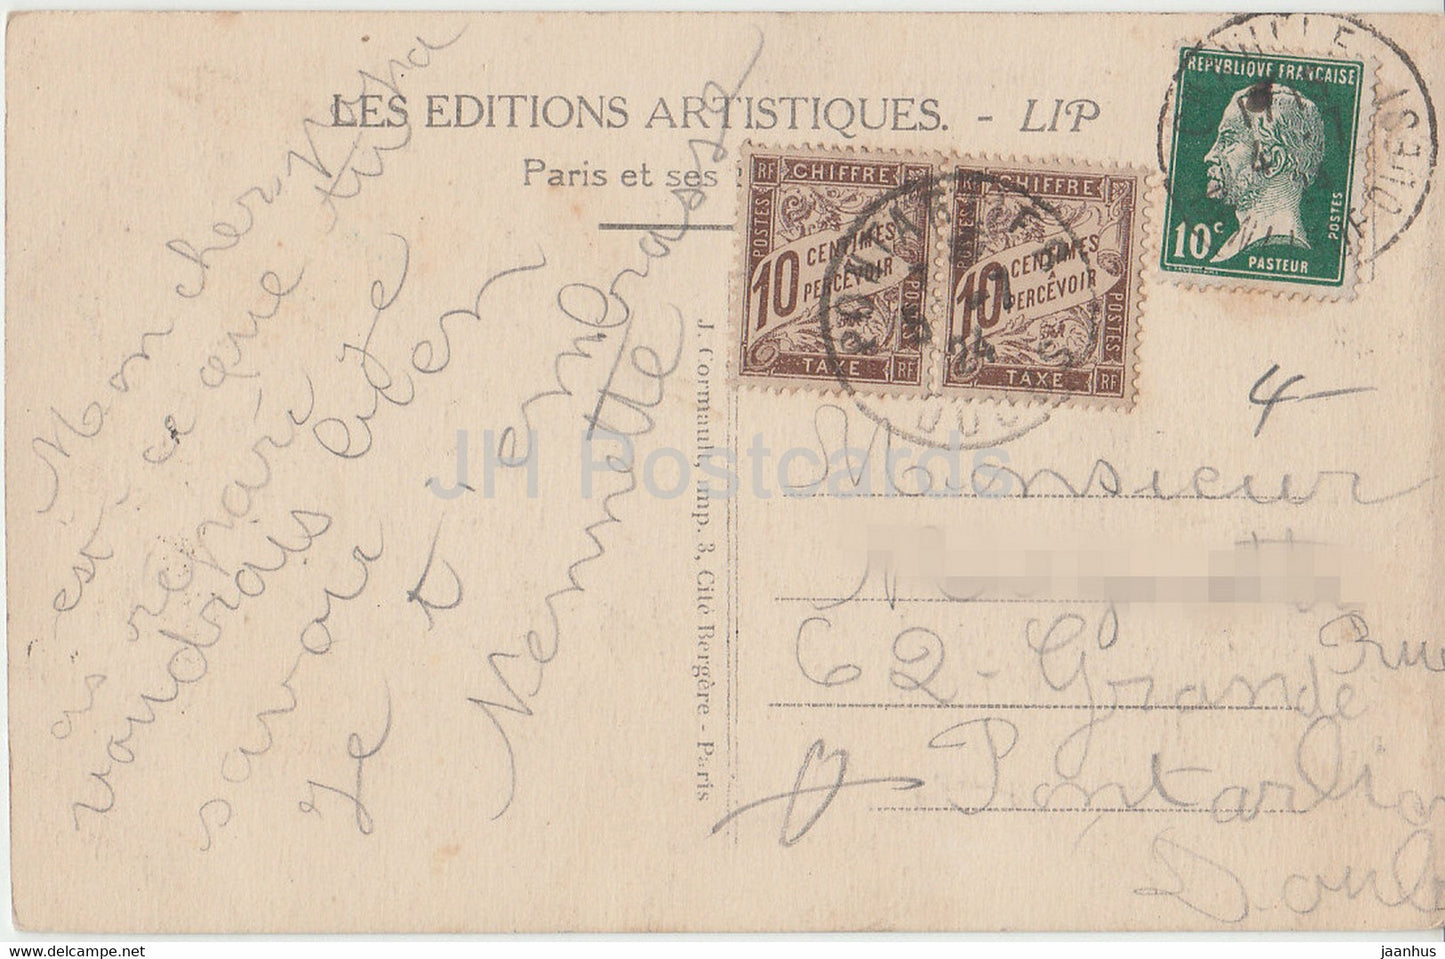 Paris - La Madeleine - L'église de la Madeleine - voiture ancienne - 19 - LIP - carte postale ancienne - France - occasion